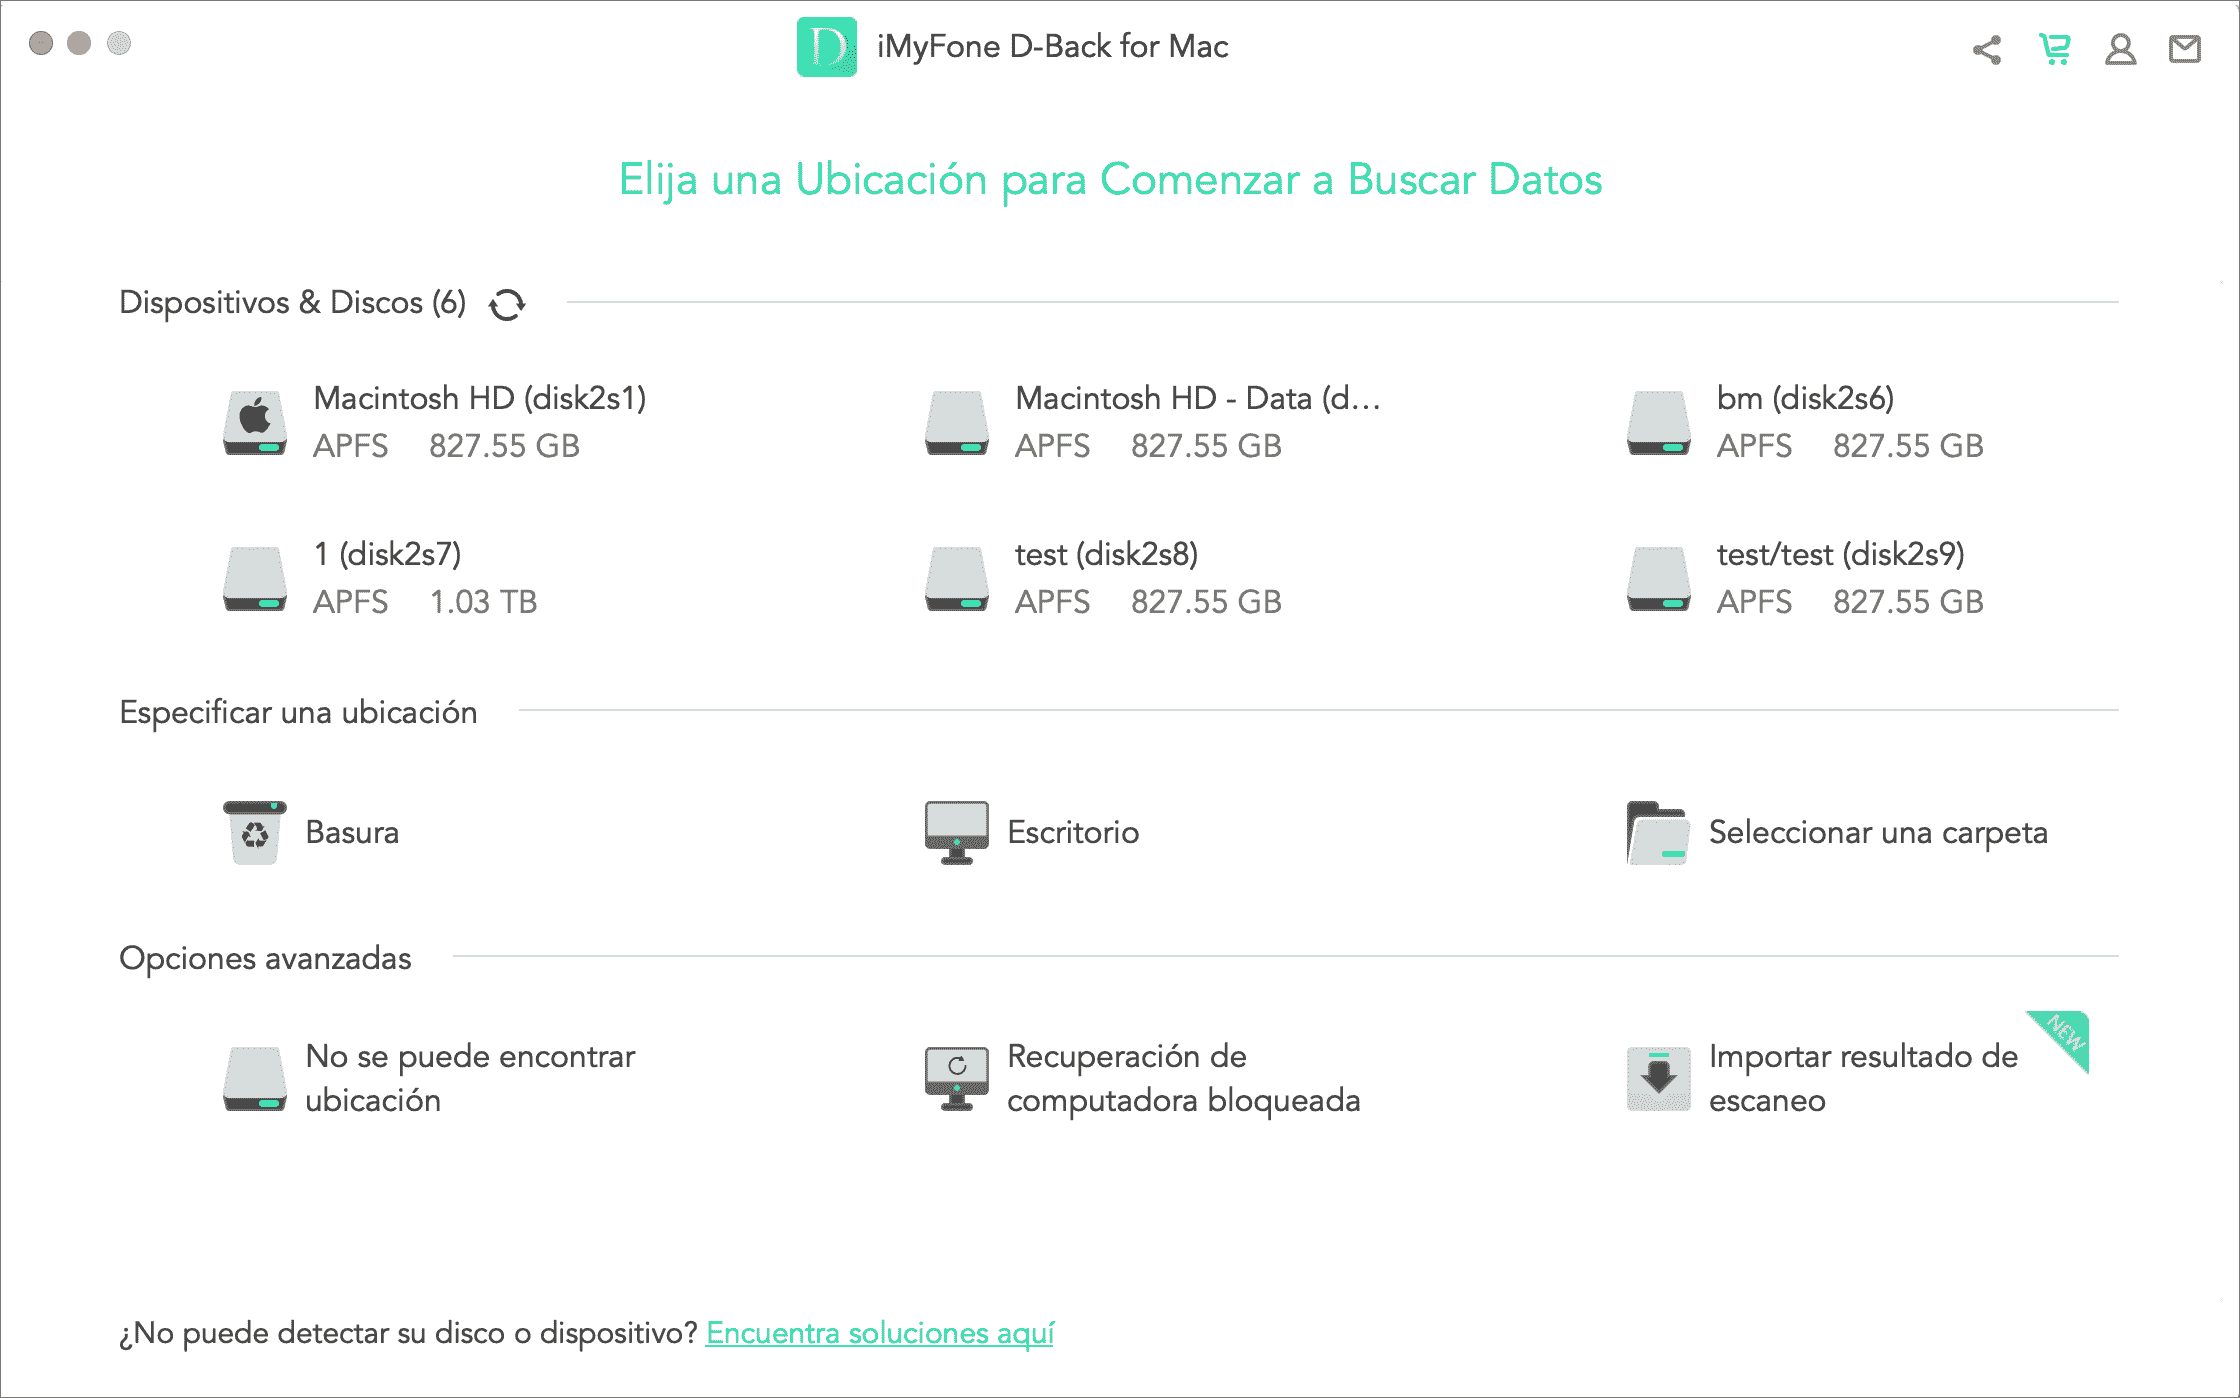 seleccionar basura en iMyFone D-Back for Mac